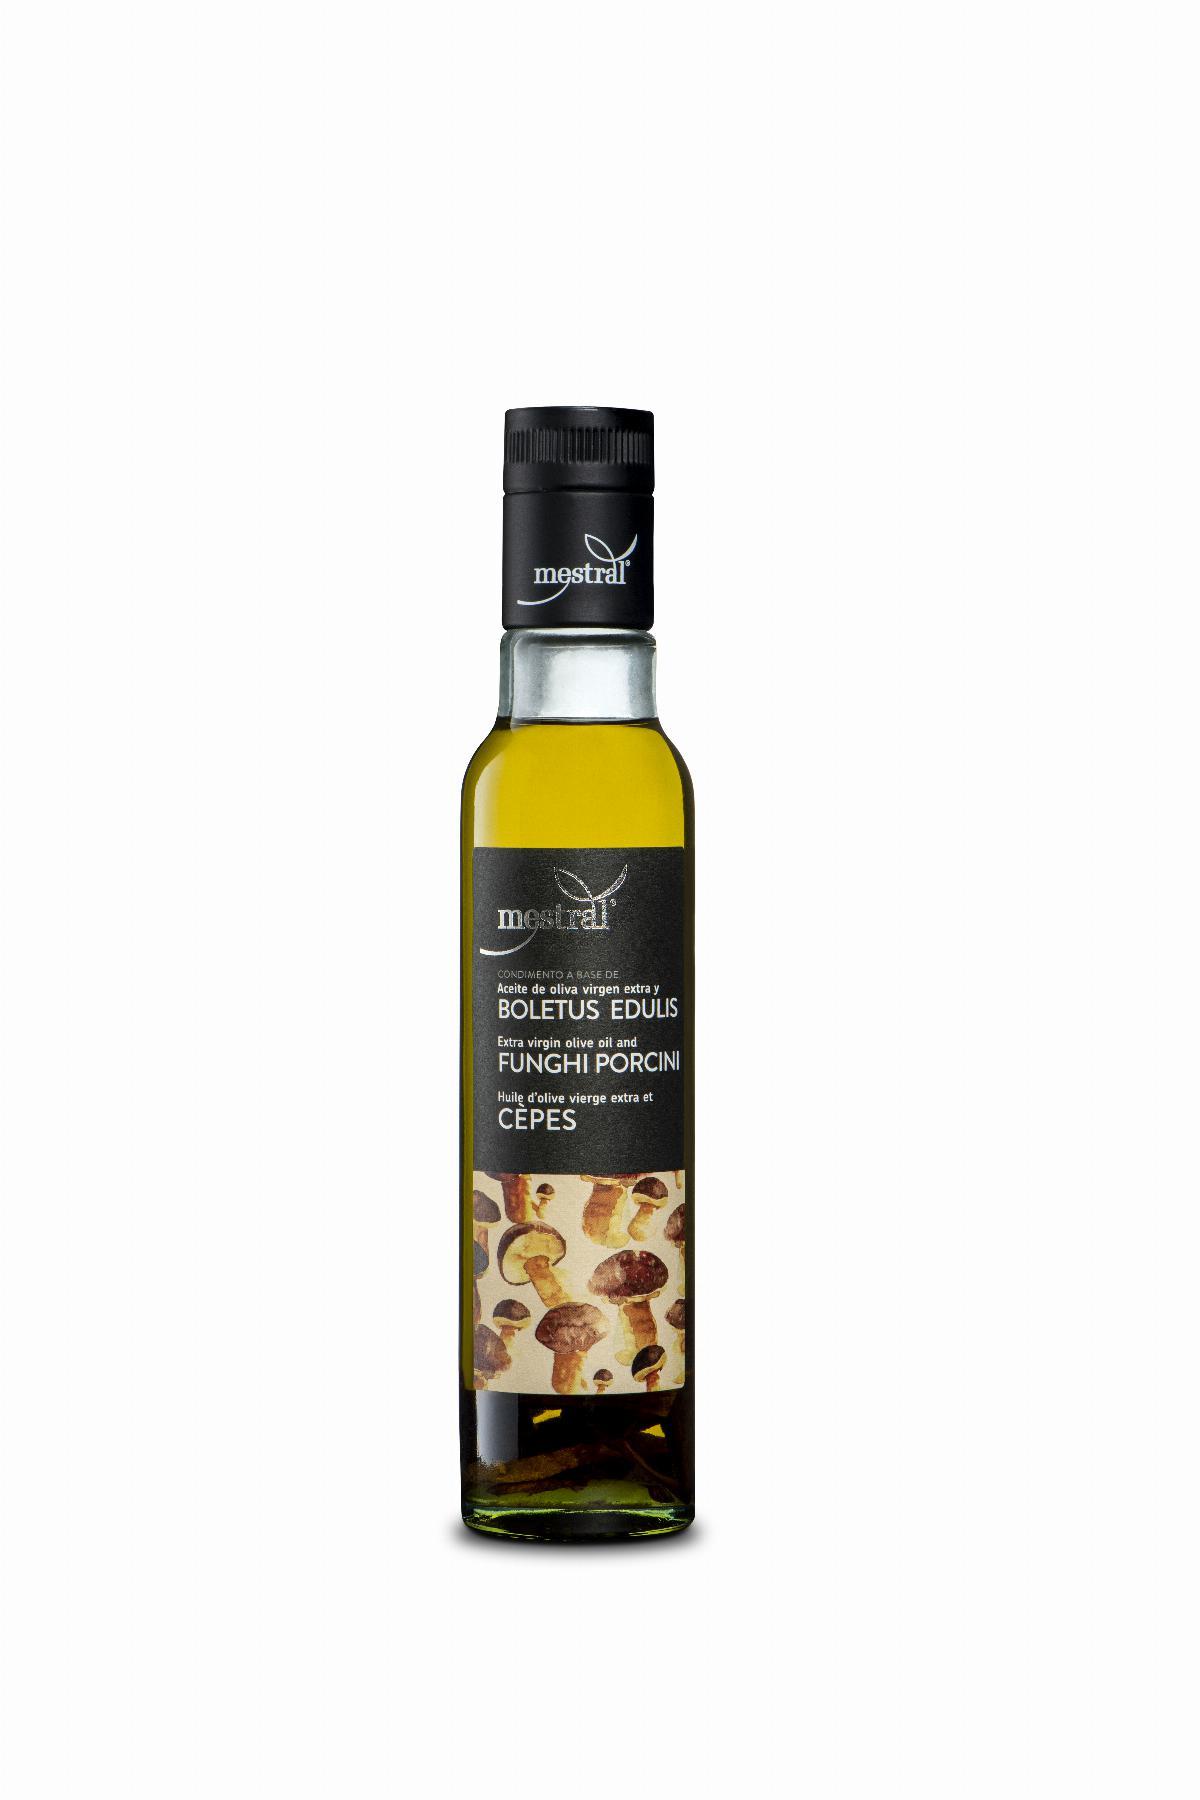 Olis i infusionats - Condiment preparat a base d'oli d'oliva amb ceps Mestral ampolla 250ml - Mestral Cambrils